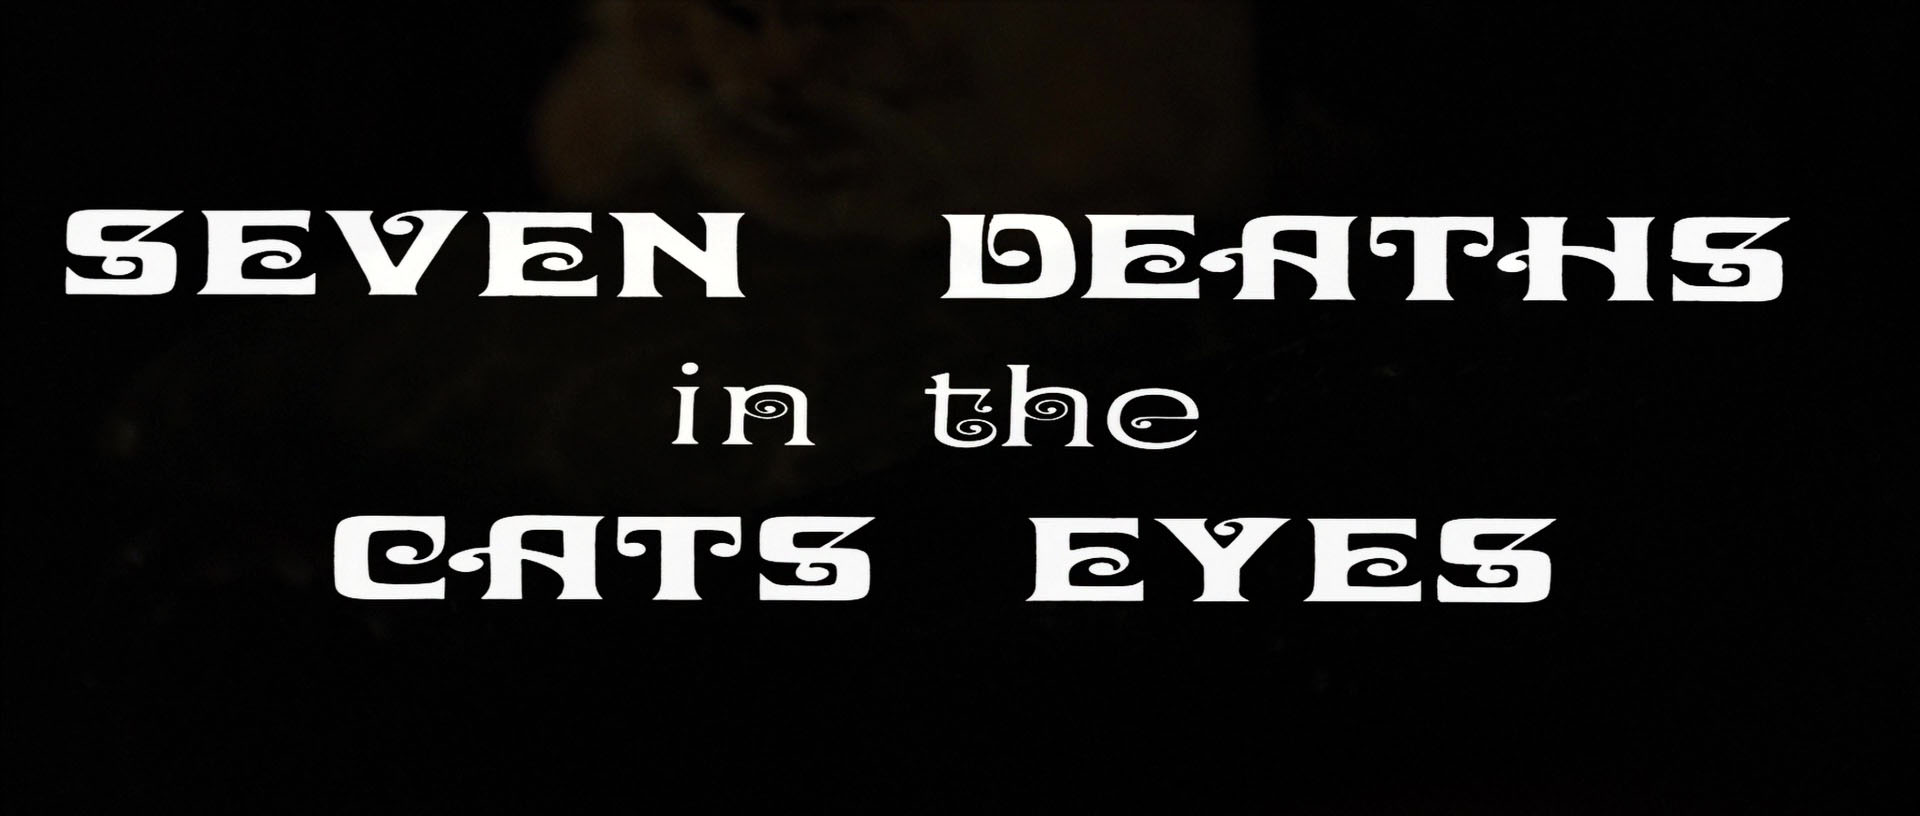 La morte negli occhi del gatto (1973) title.jpg